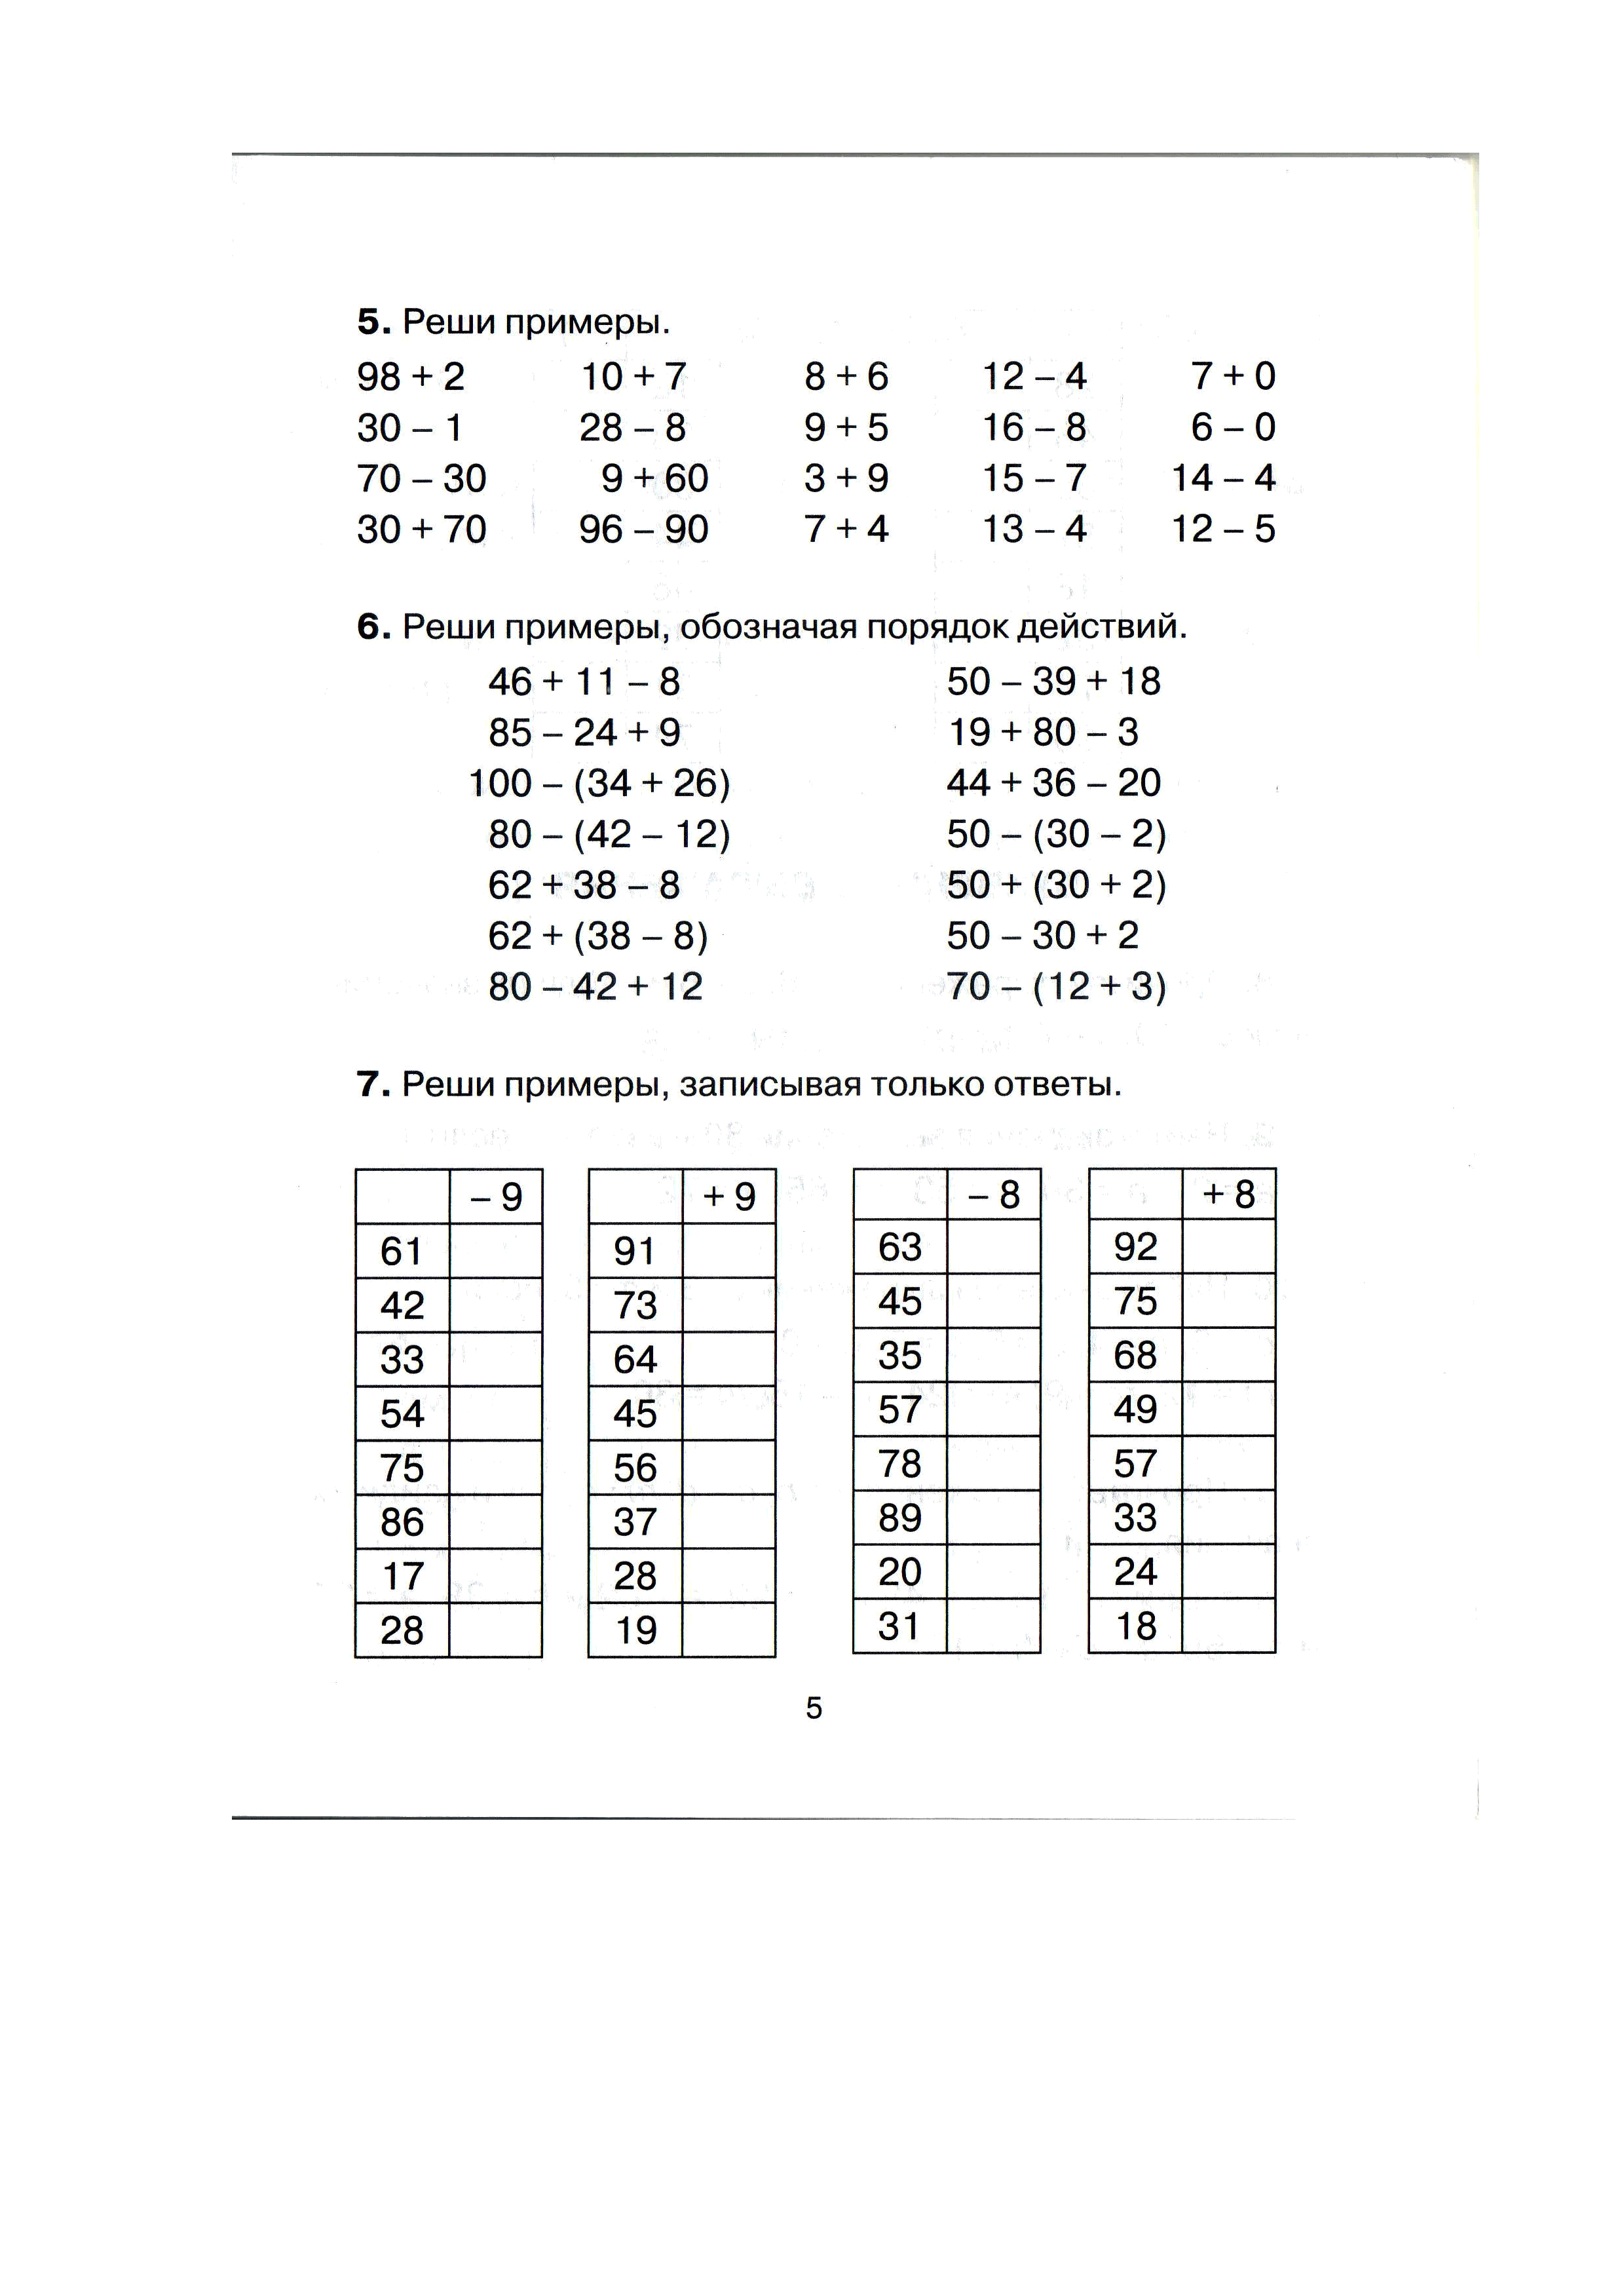 Любое задание по математике. Задания по математике для 3 класса задачи и примеры. Примеры математика математика 3 класс. Задания по математике 3 класс 3 четверть примеры. Задания по математике для 3 класса задачи и примеры с ответами.